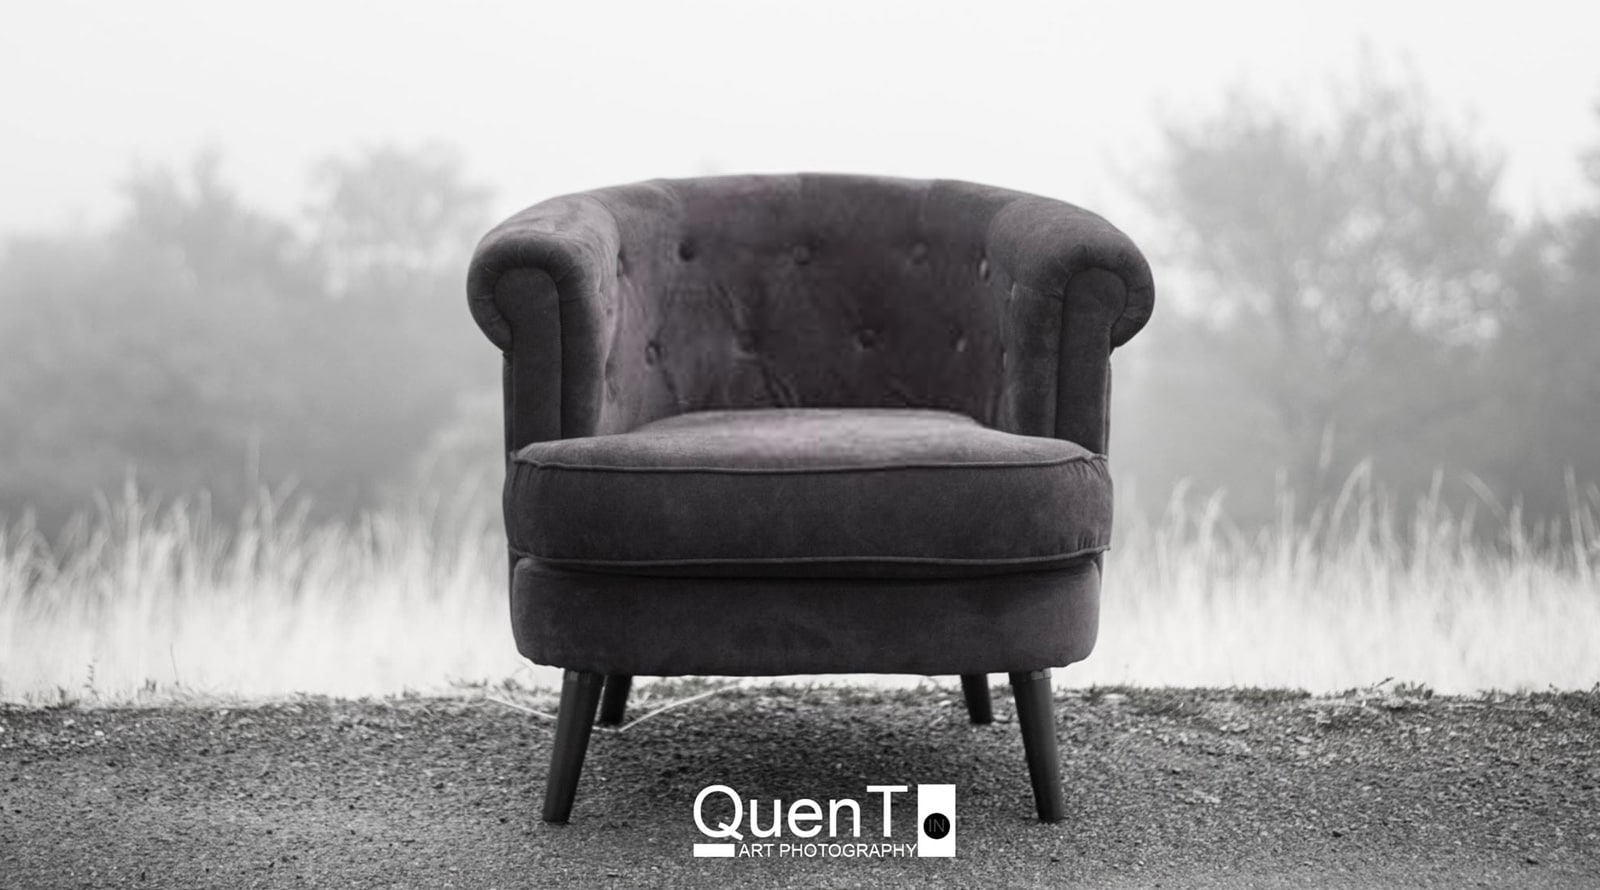 Le fauteuil de QuenT. s’installe à Dijon : venez prendre la pose